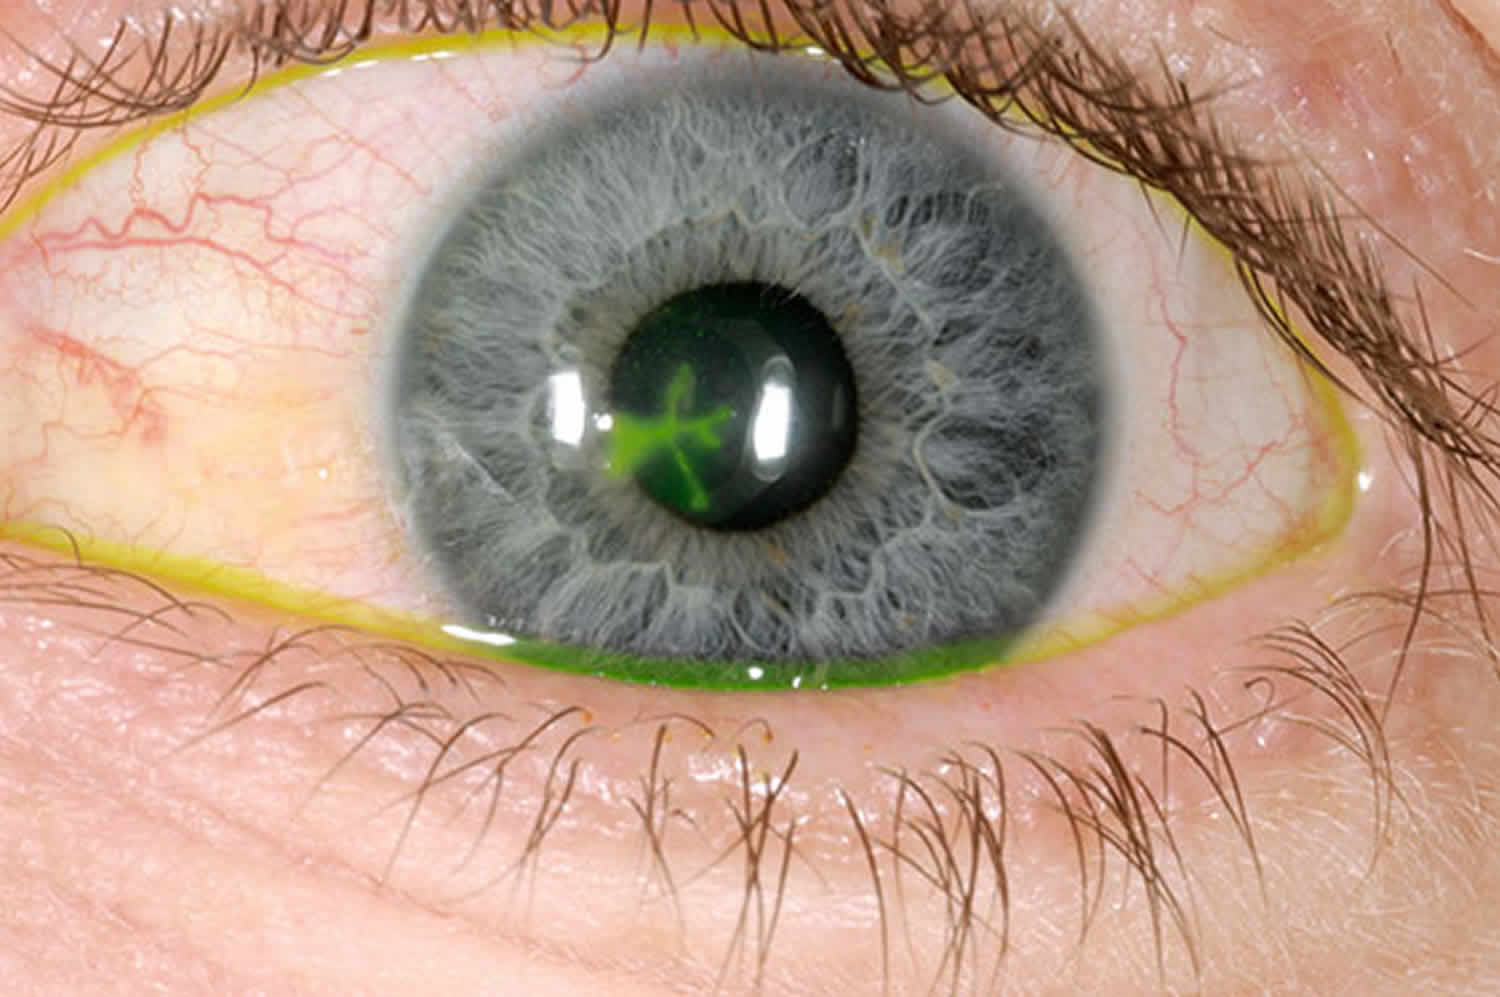 Кератит глаза